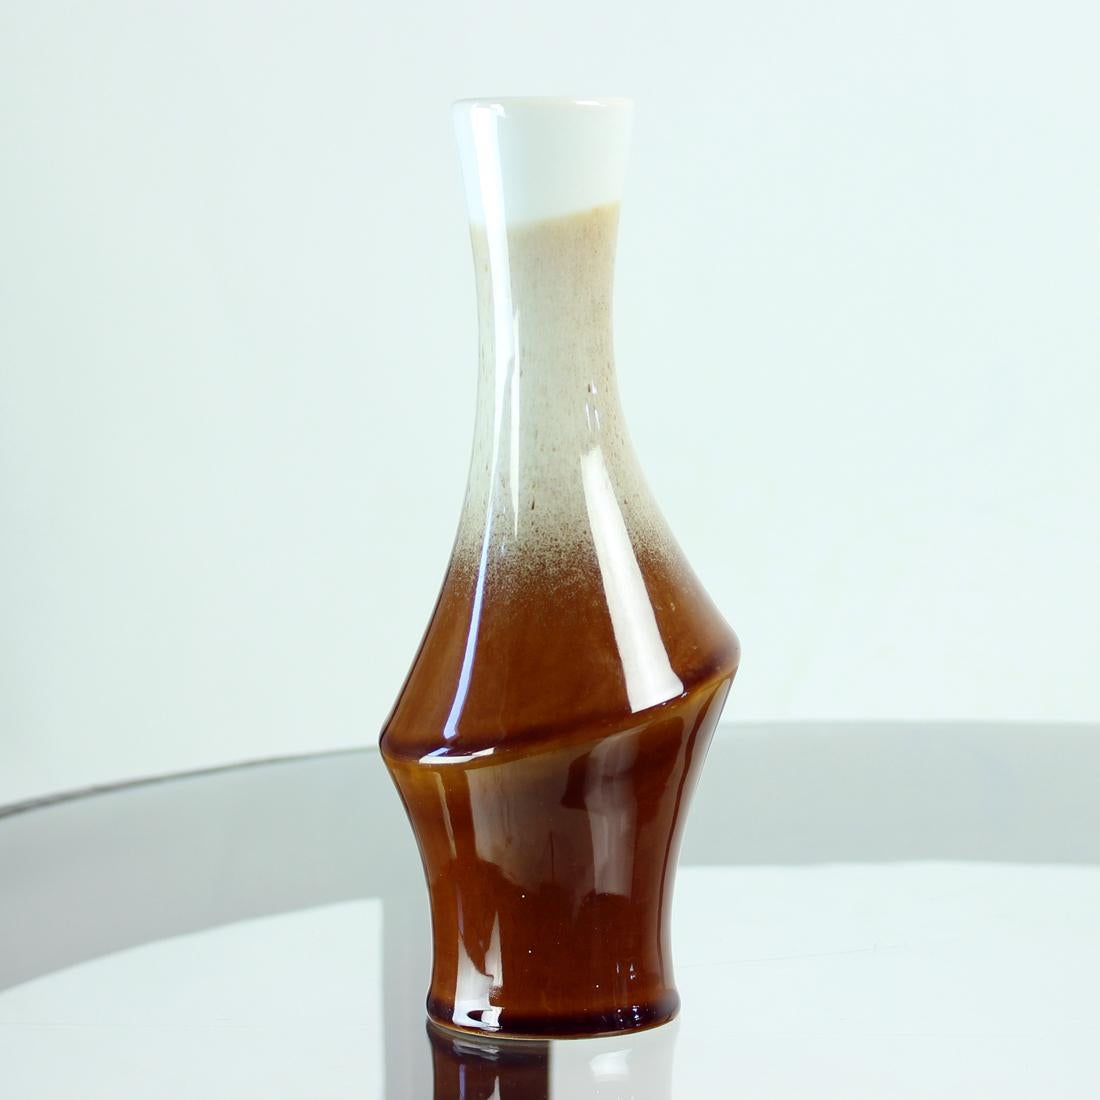 Magnifique vase en céramique émaillée produit par Ditmar Urbach dans les années 1960. Le cachet d'origine est entièrement visible sur le fond. Le vase est une élégante combinaison de trois couleurs en une seule pièce brillante.  Le vase est en